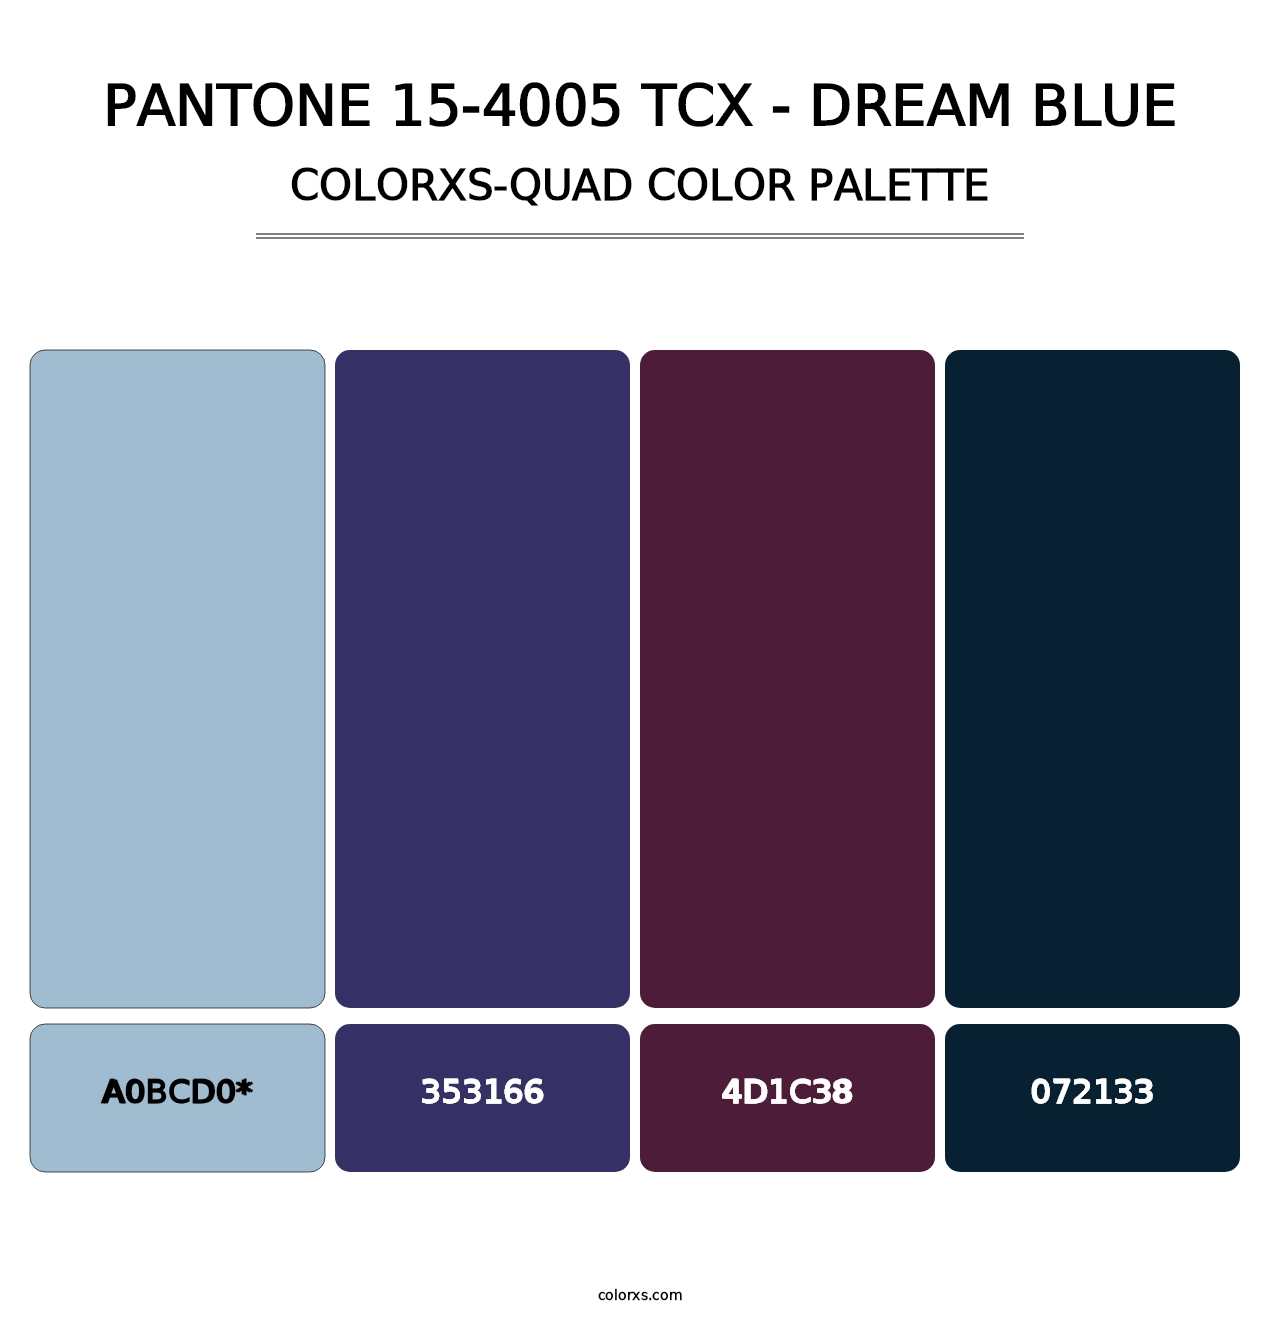 PANTONE 15-4005 TCX - Dream Blue - Colorxs Quad Palette